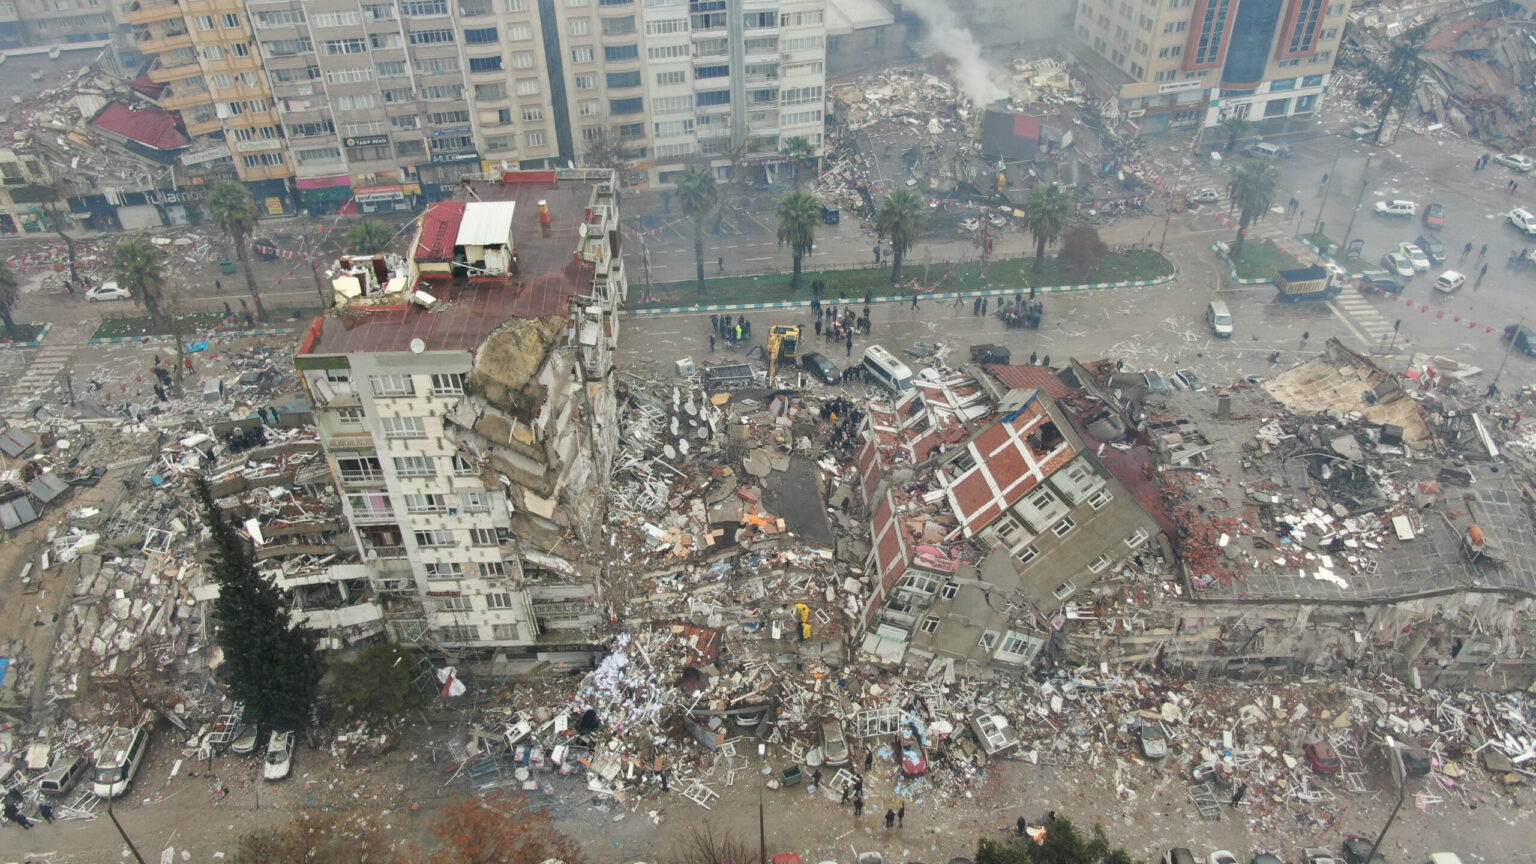 Cruz Roja estima hasta 250.000 afectados por los daños en viviendas por el seísmo en Turquía